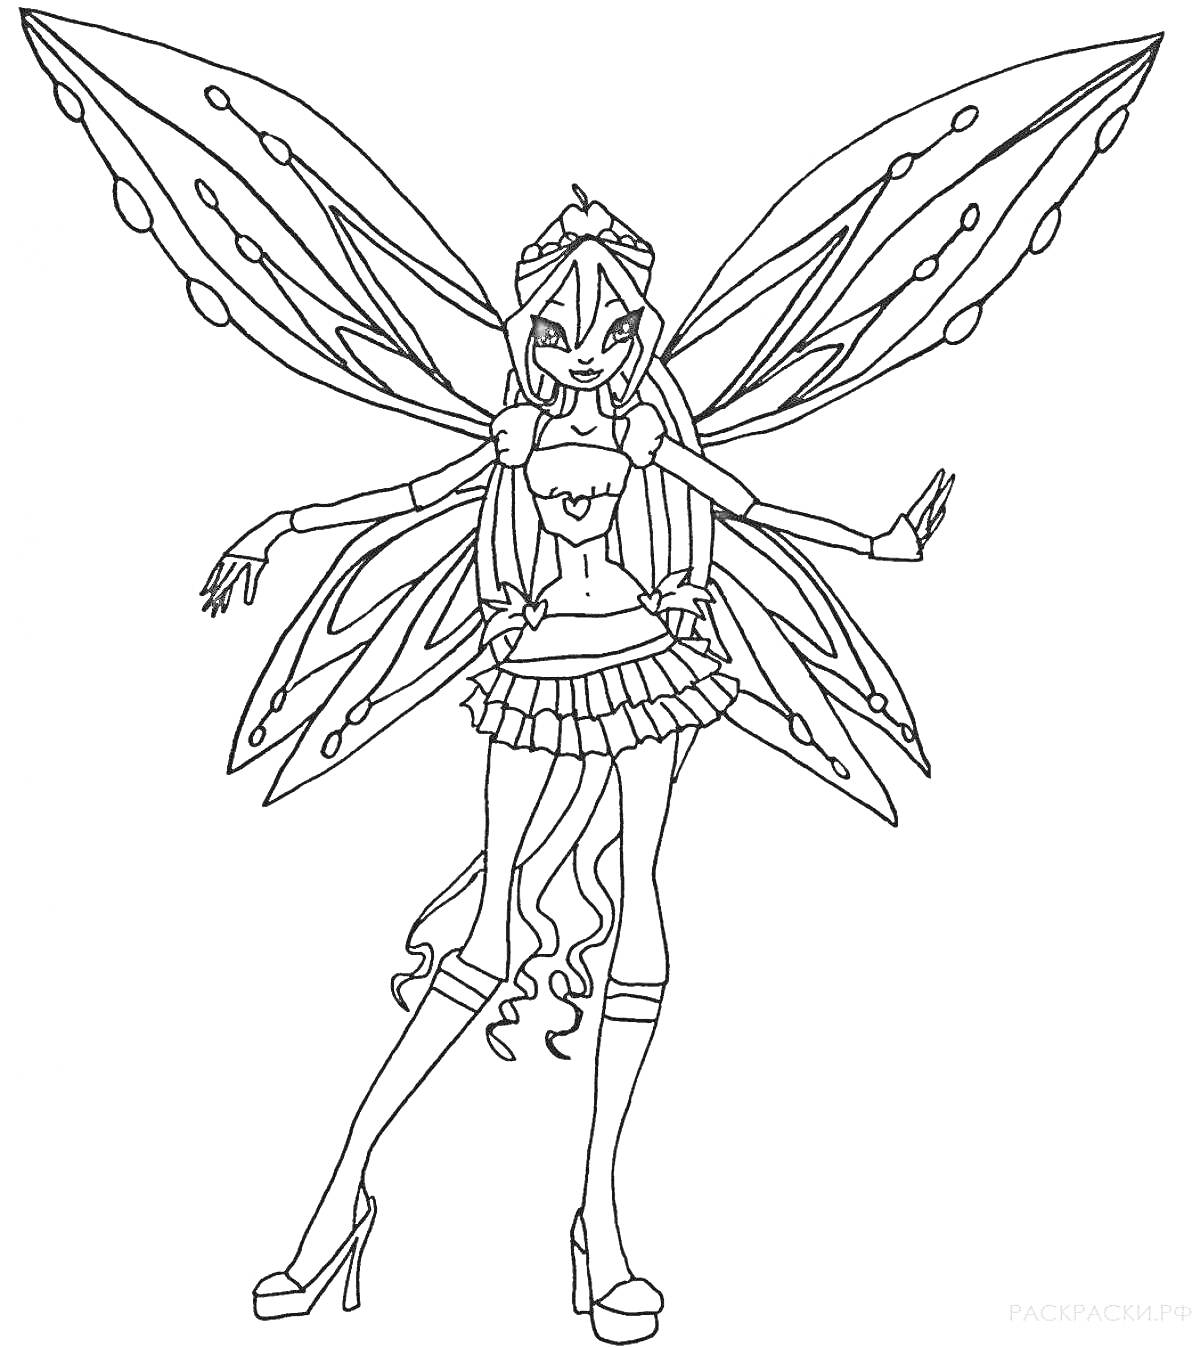 Раскраска Блум винкс в феечном наряде с длинными волосами, крыльями и высокими каблуками